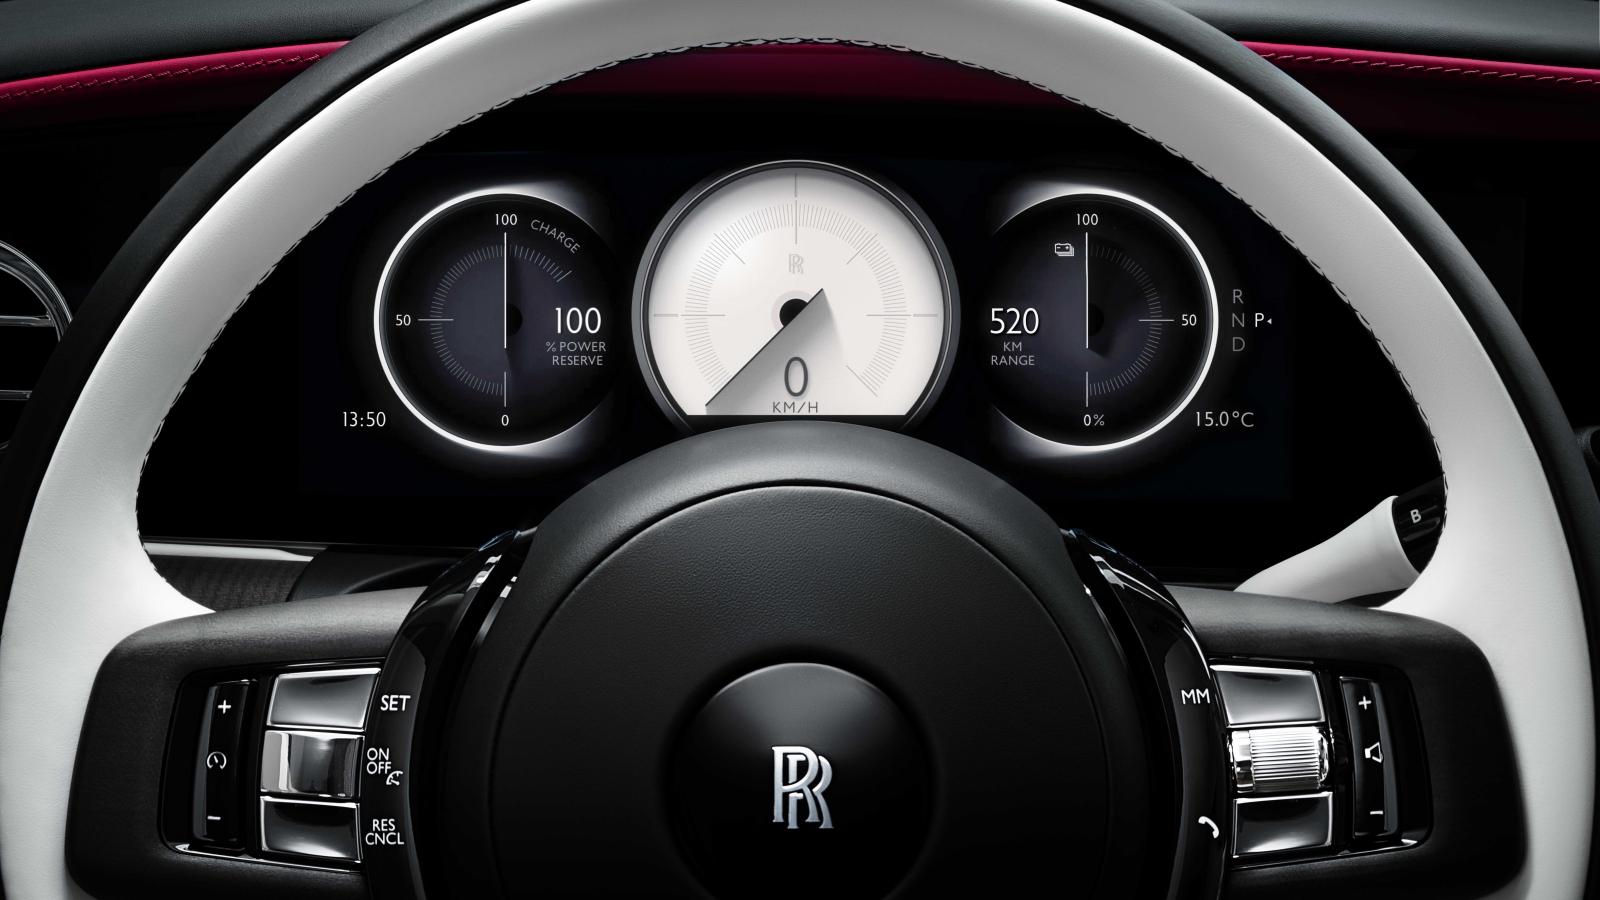 Rolls Royce Spectre ?>